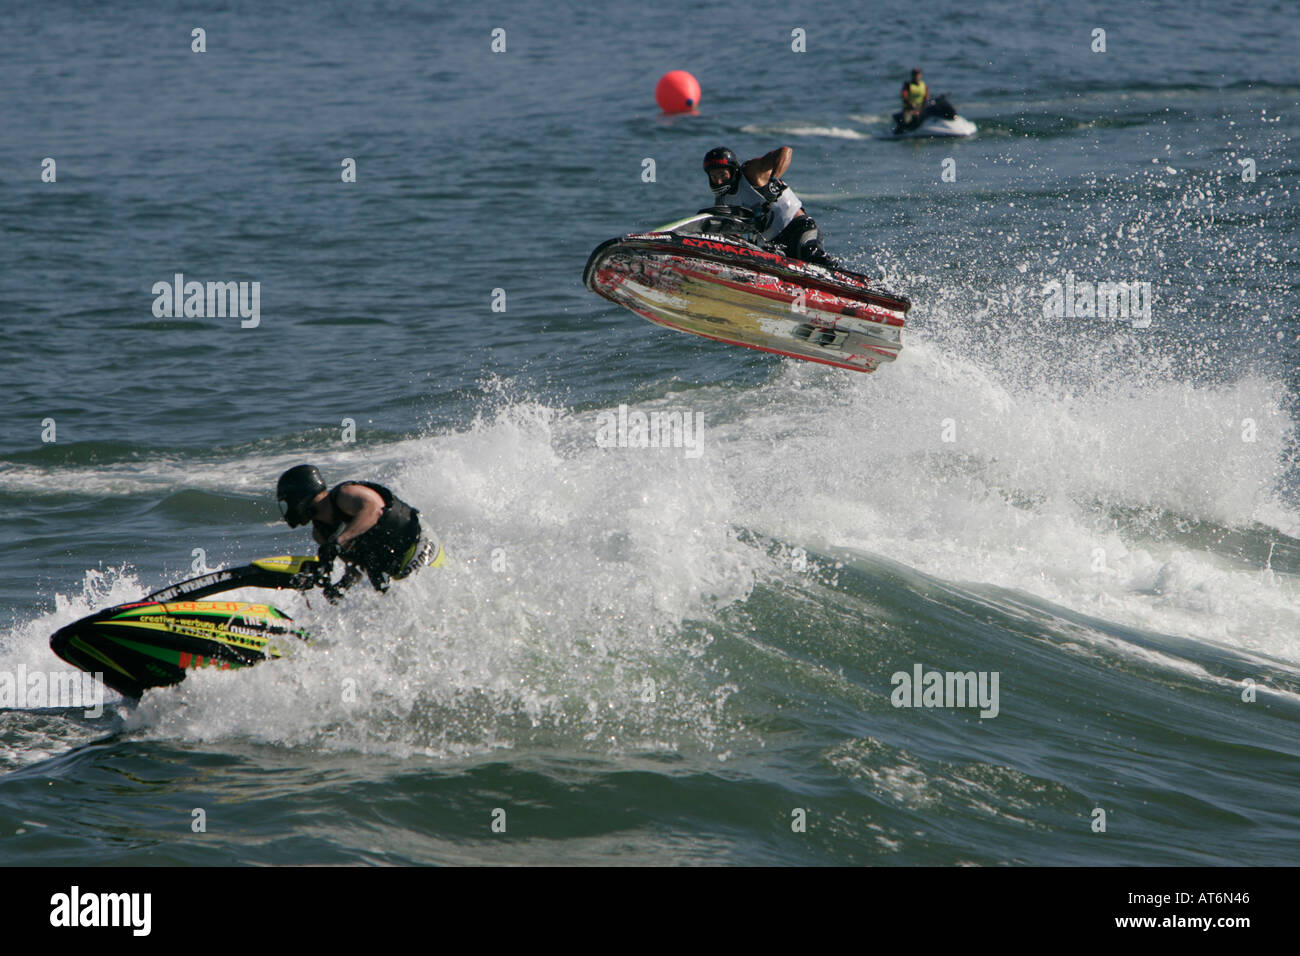 Championnats du monde de jet ski freestyle, Los Angeles, Californie Banque D'Images